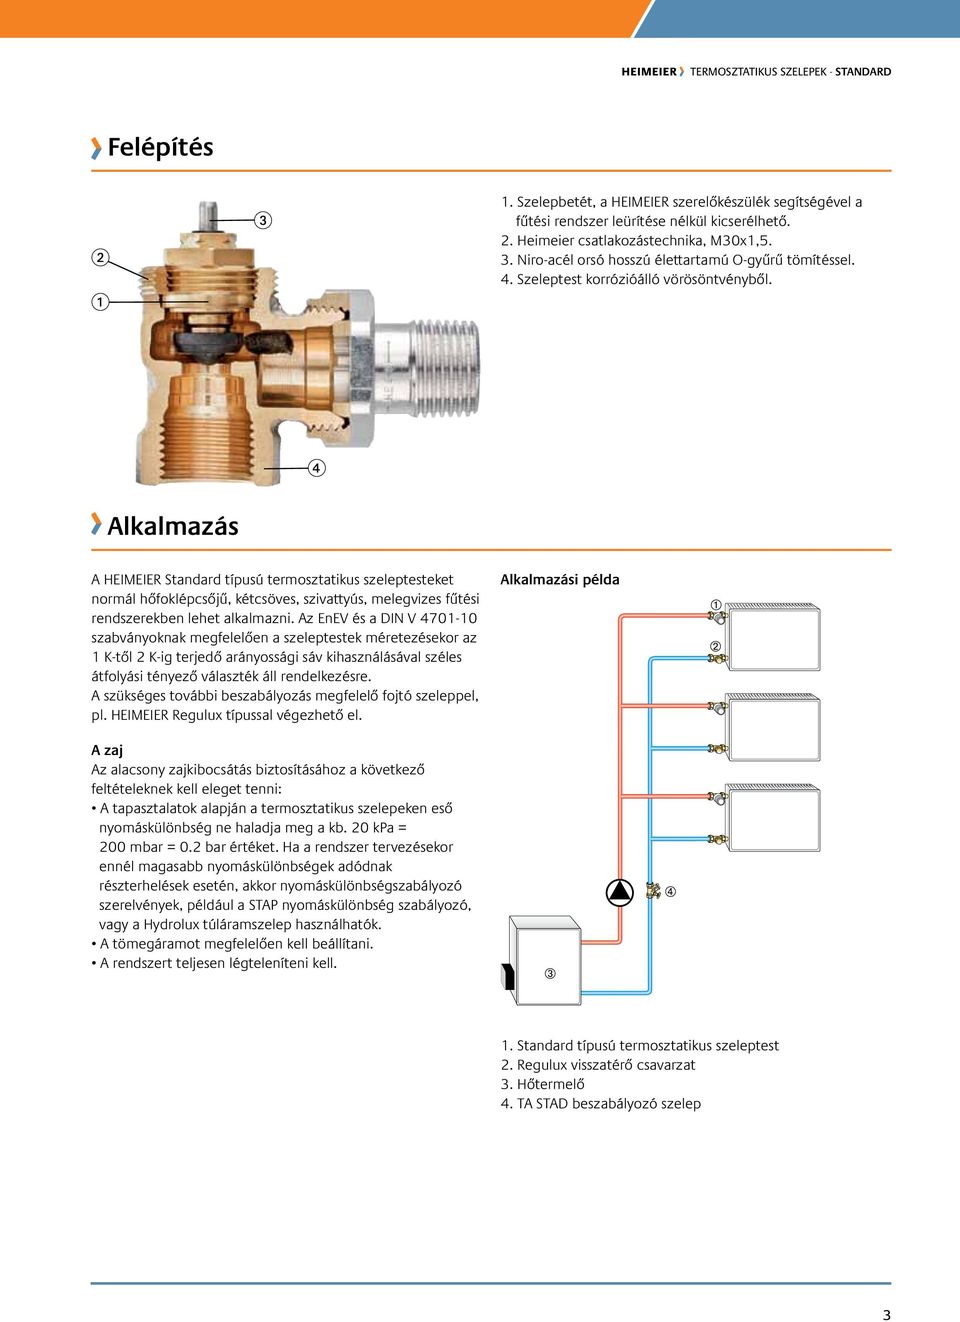 Alkalmazás A HEIMEIER Standard típusú termosztatikus szeleptesteket normál hőfoklépcsőjű, kétcsöves, szivattyús, melegvizes fűtési rendszerekben lehet alkalmazni.